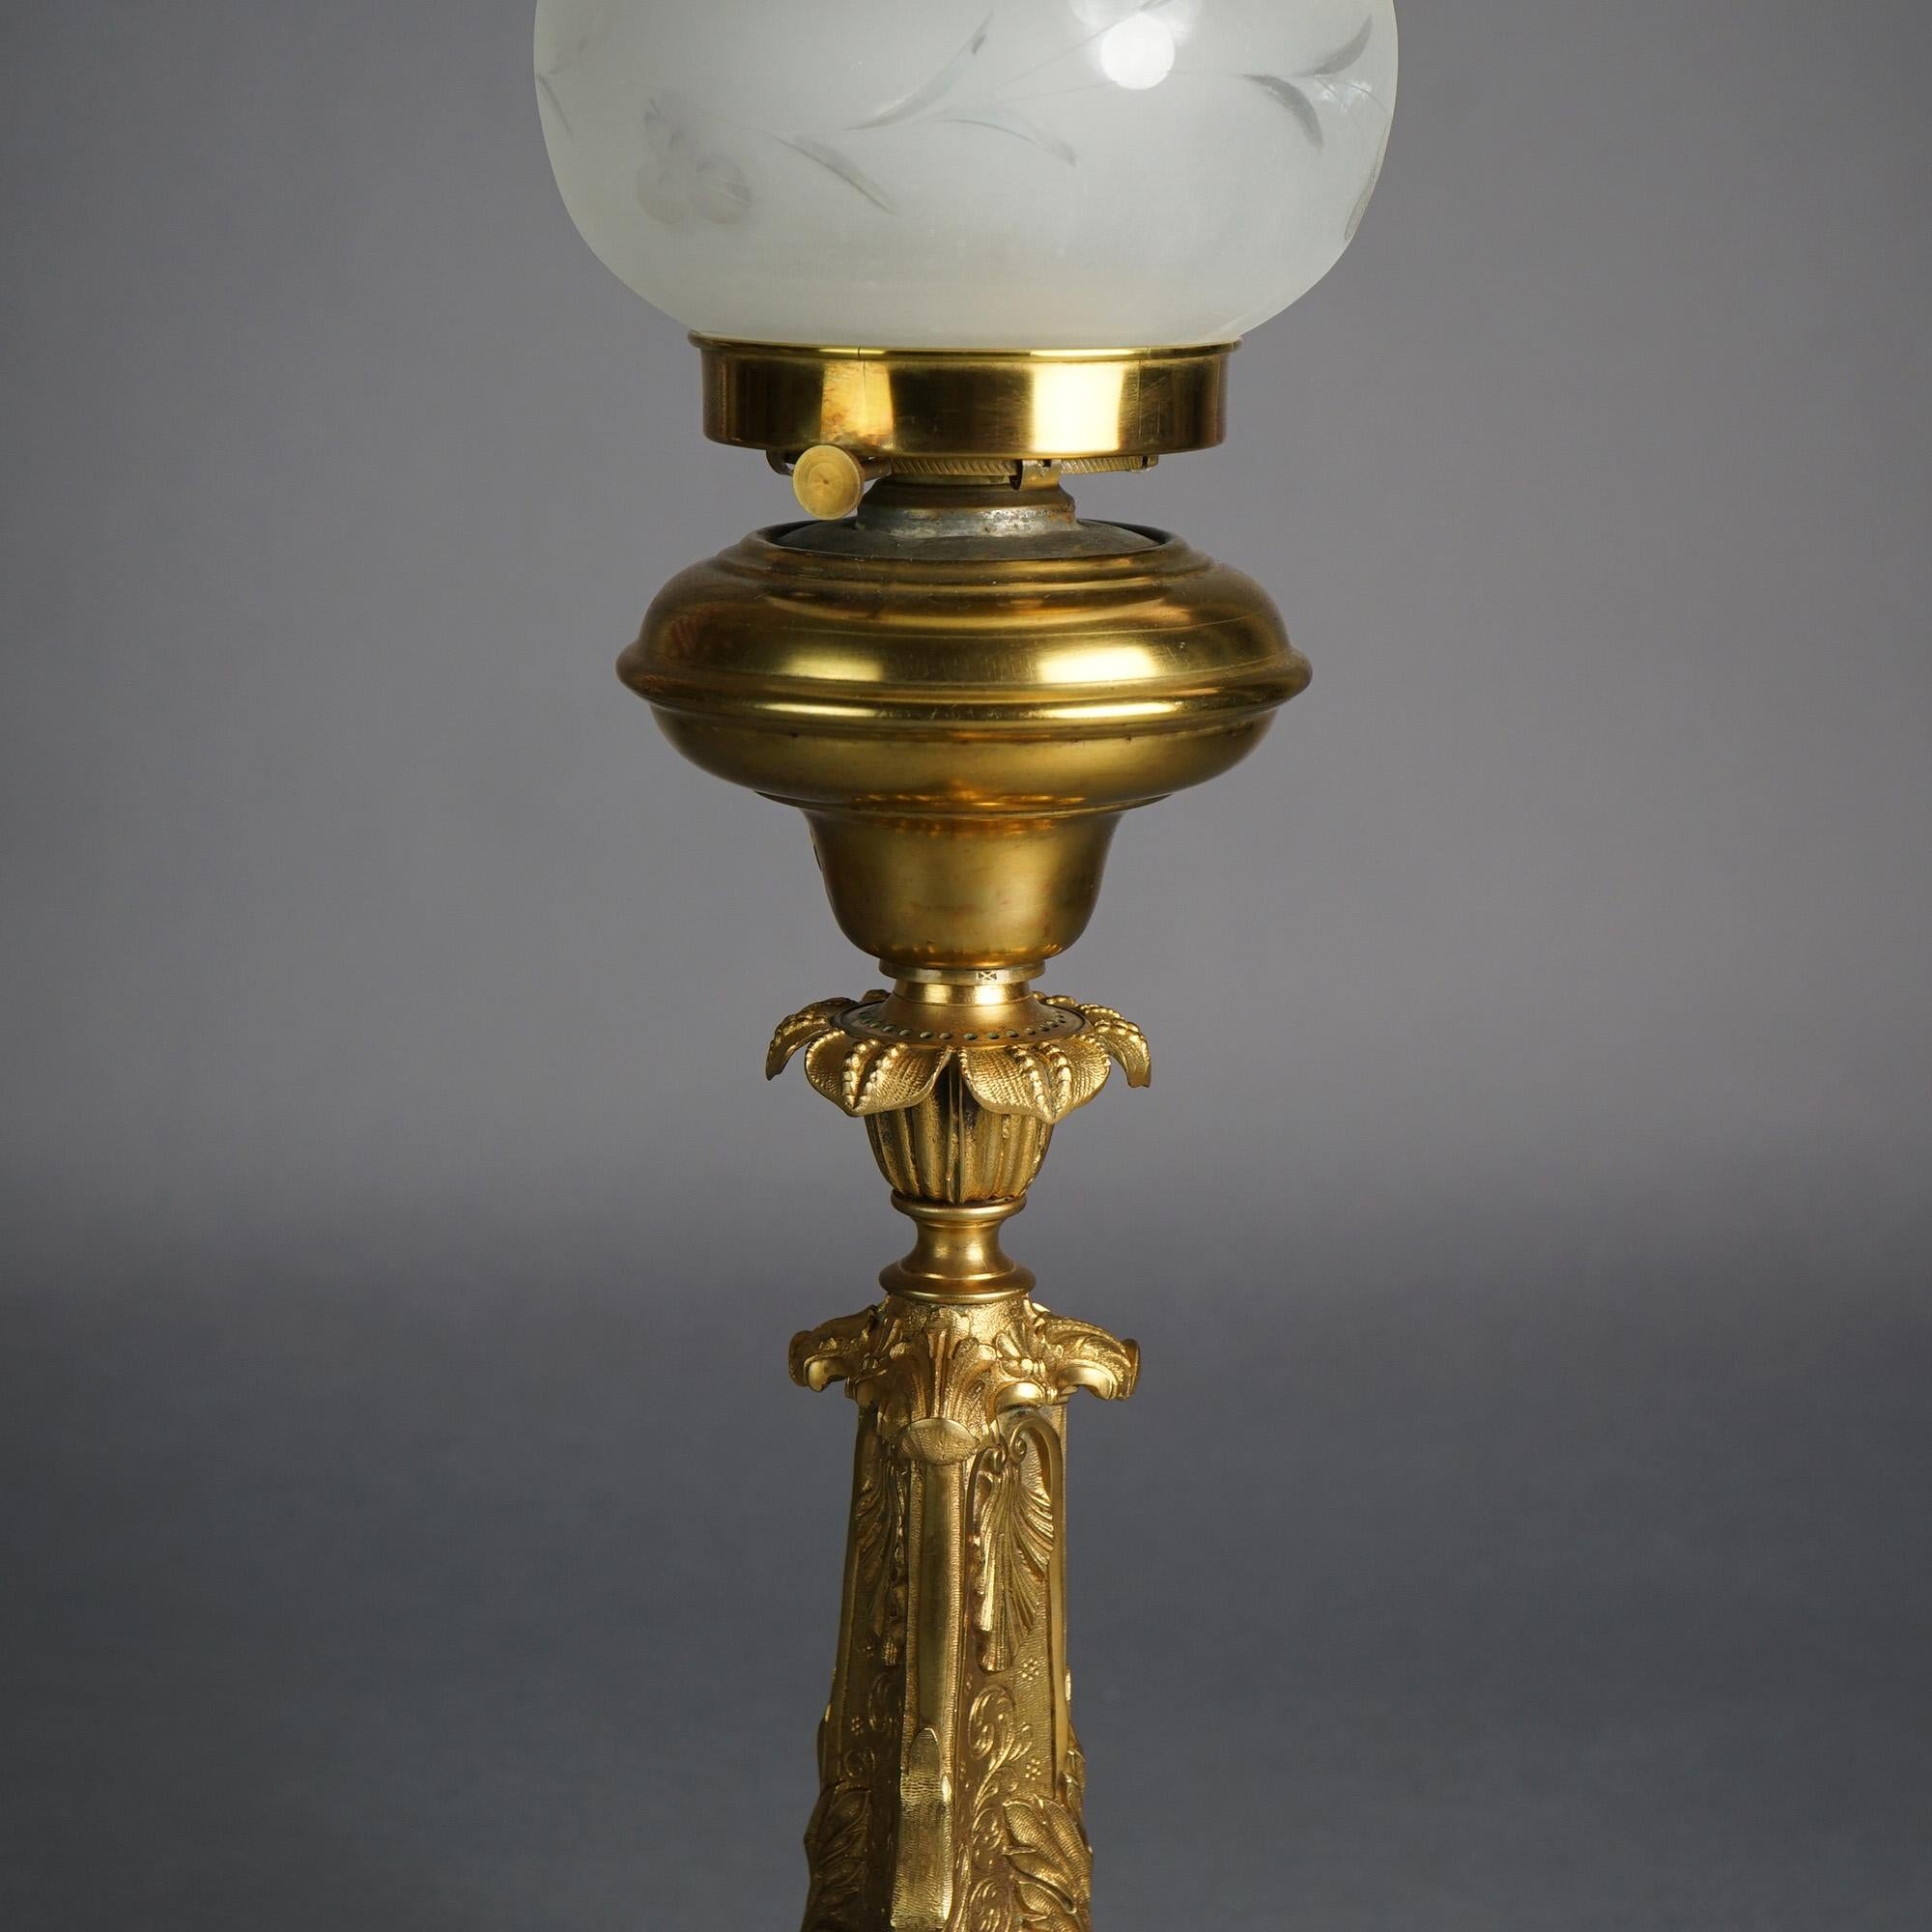 Antique Cornelius School Gilt Bronze Solar Lamp with Cut Glass Shade C1840 7